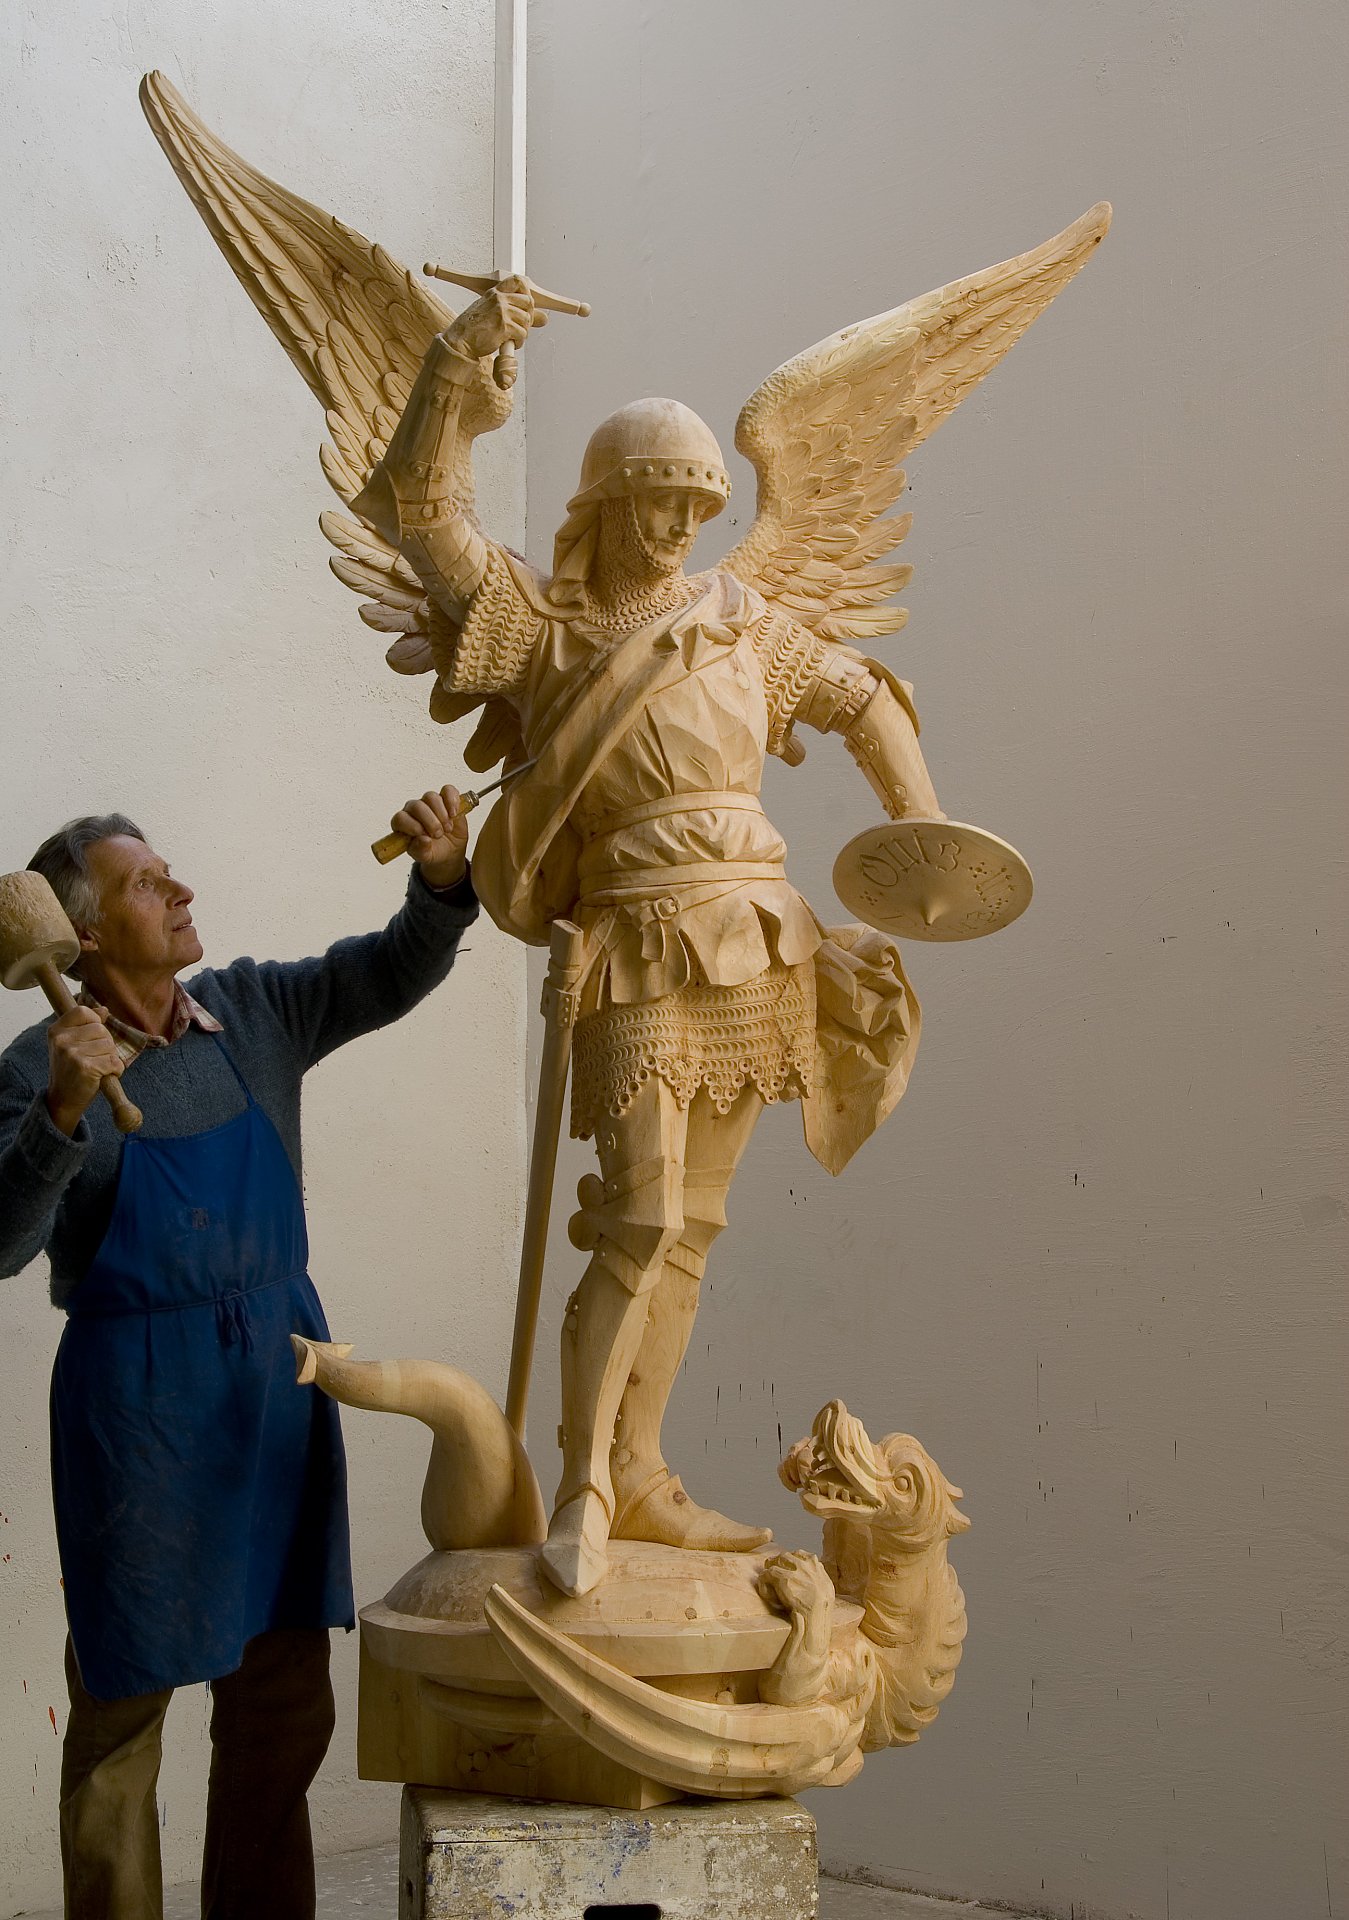 Heiliger Christophorus Statue - handgeschnitzt